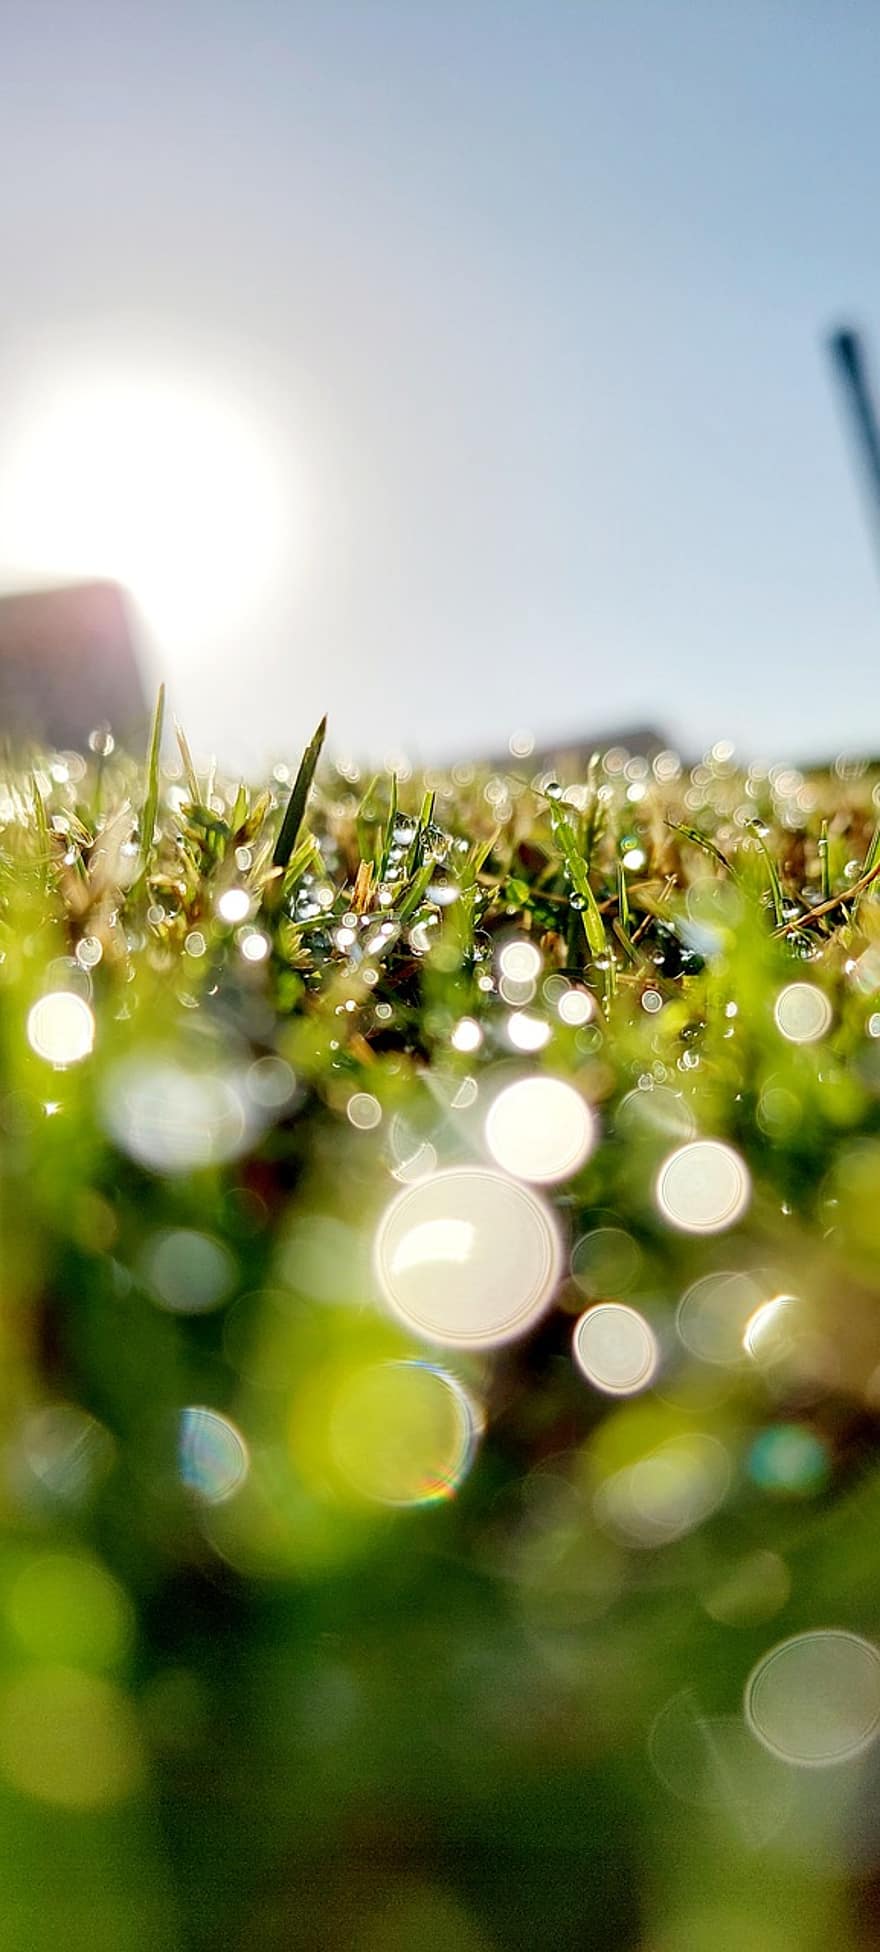 Grass, Dew, Sunlight, Water, Sparkles, Garden, Bokeh, Nature